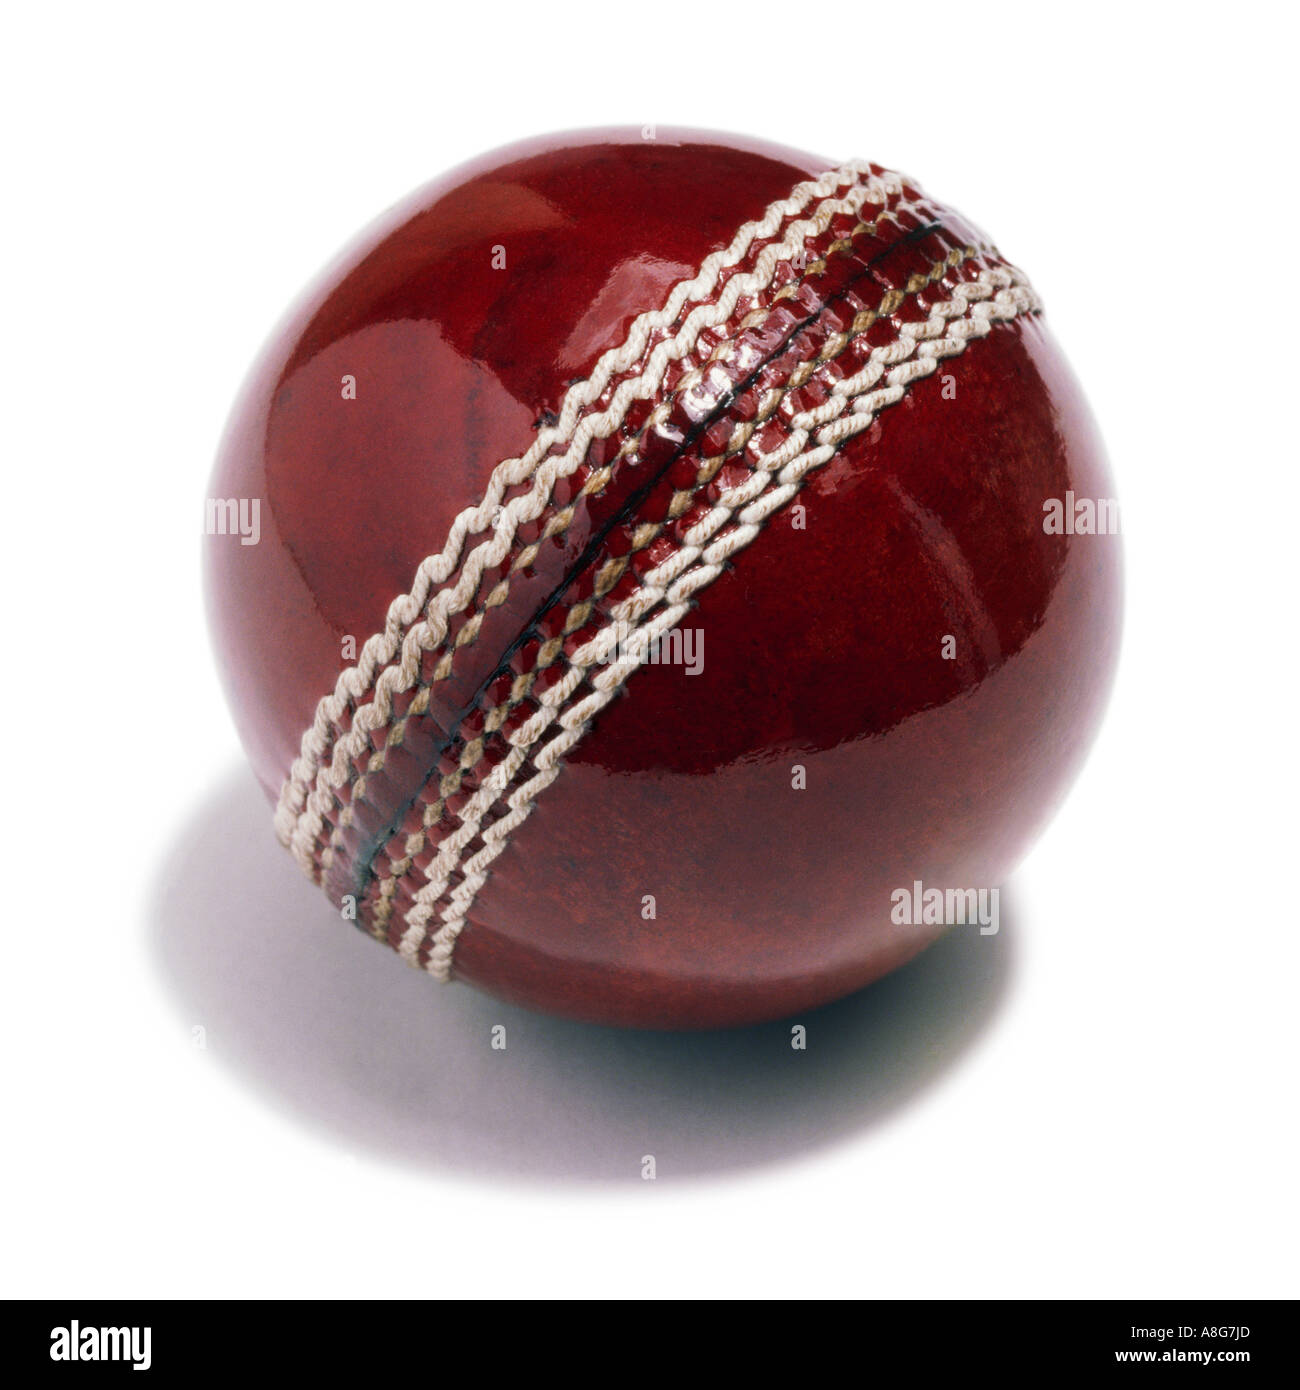 A cricket ball Stock Photo